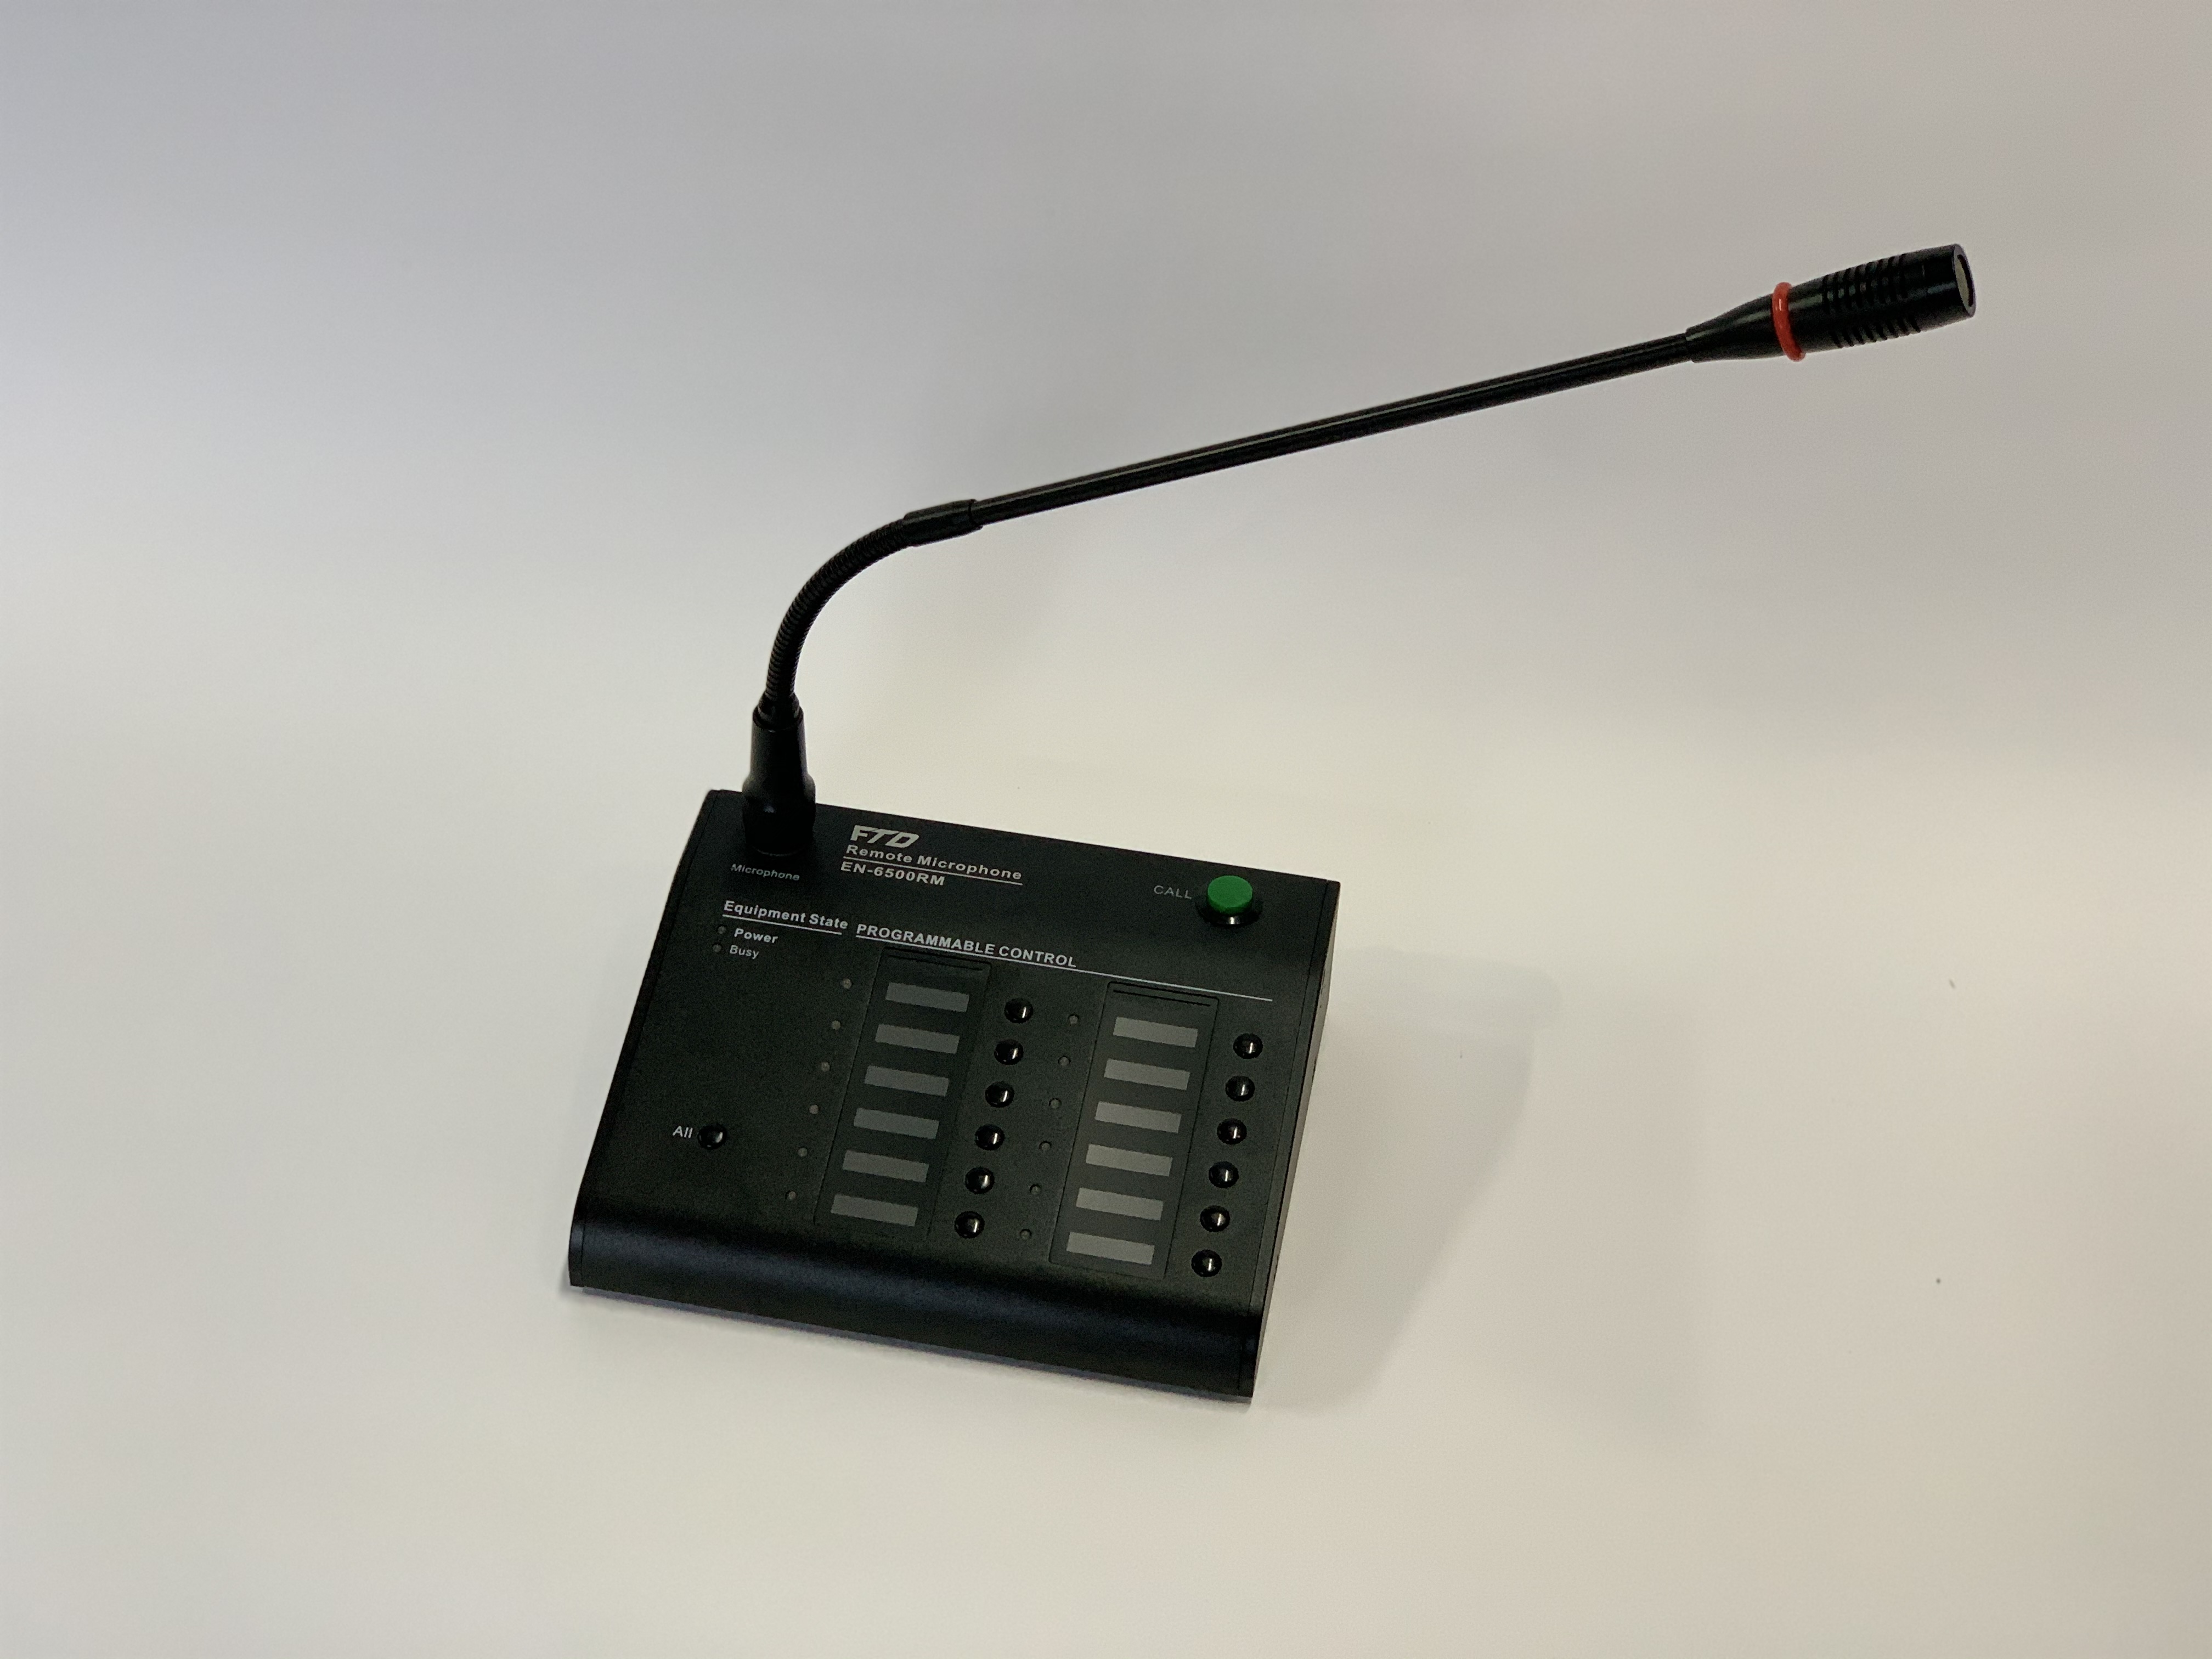 EN-6500RM Remote Paging Microphone